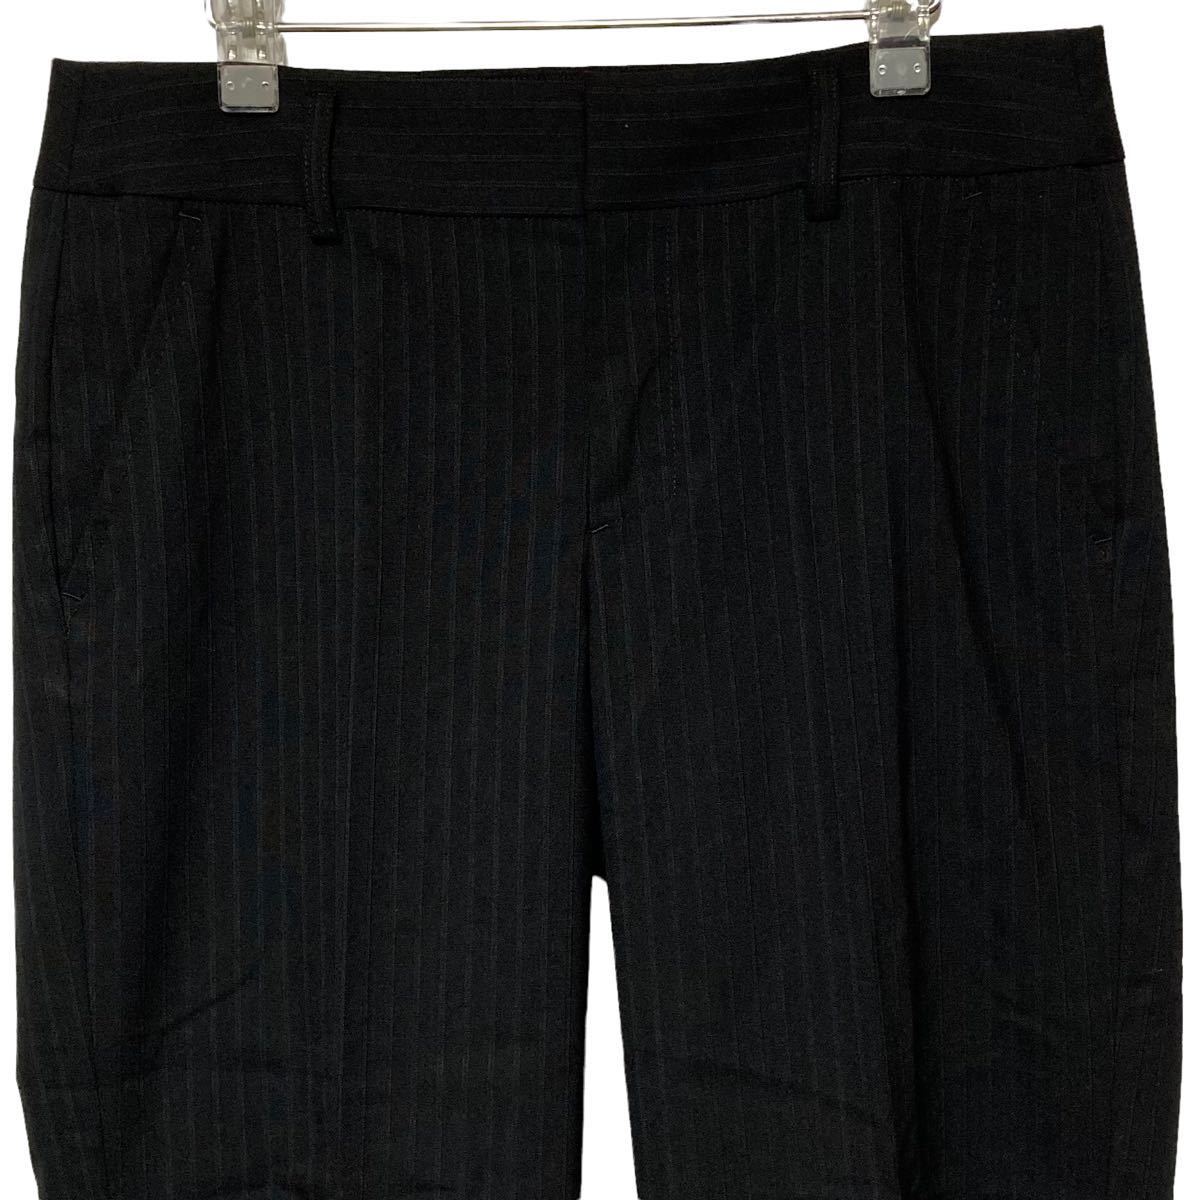 H0273 COMME CA DU MODE Comme Ca Du Mode pants black stripe size 7 wool 96% lady's bottoms 